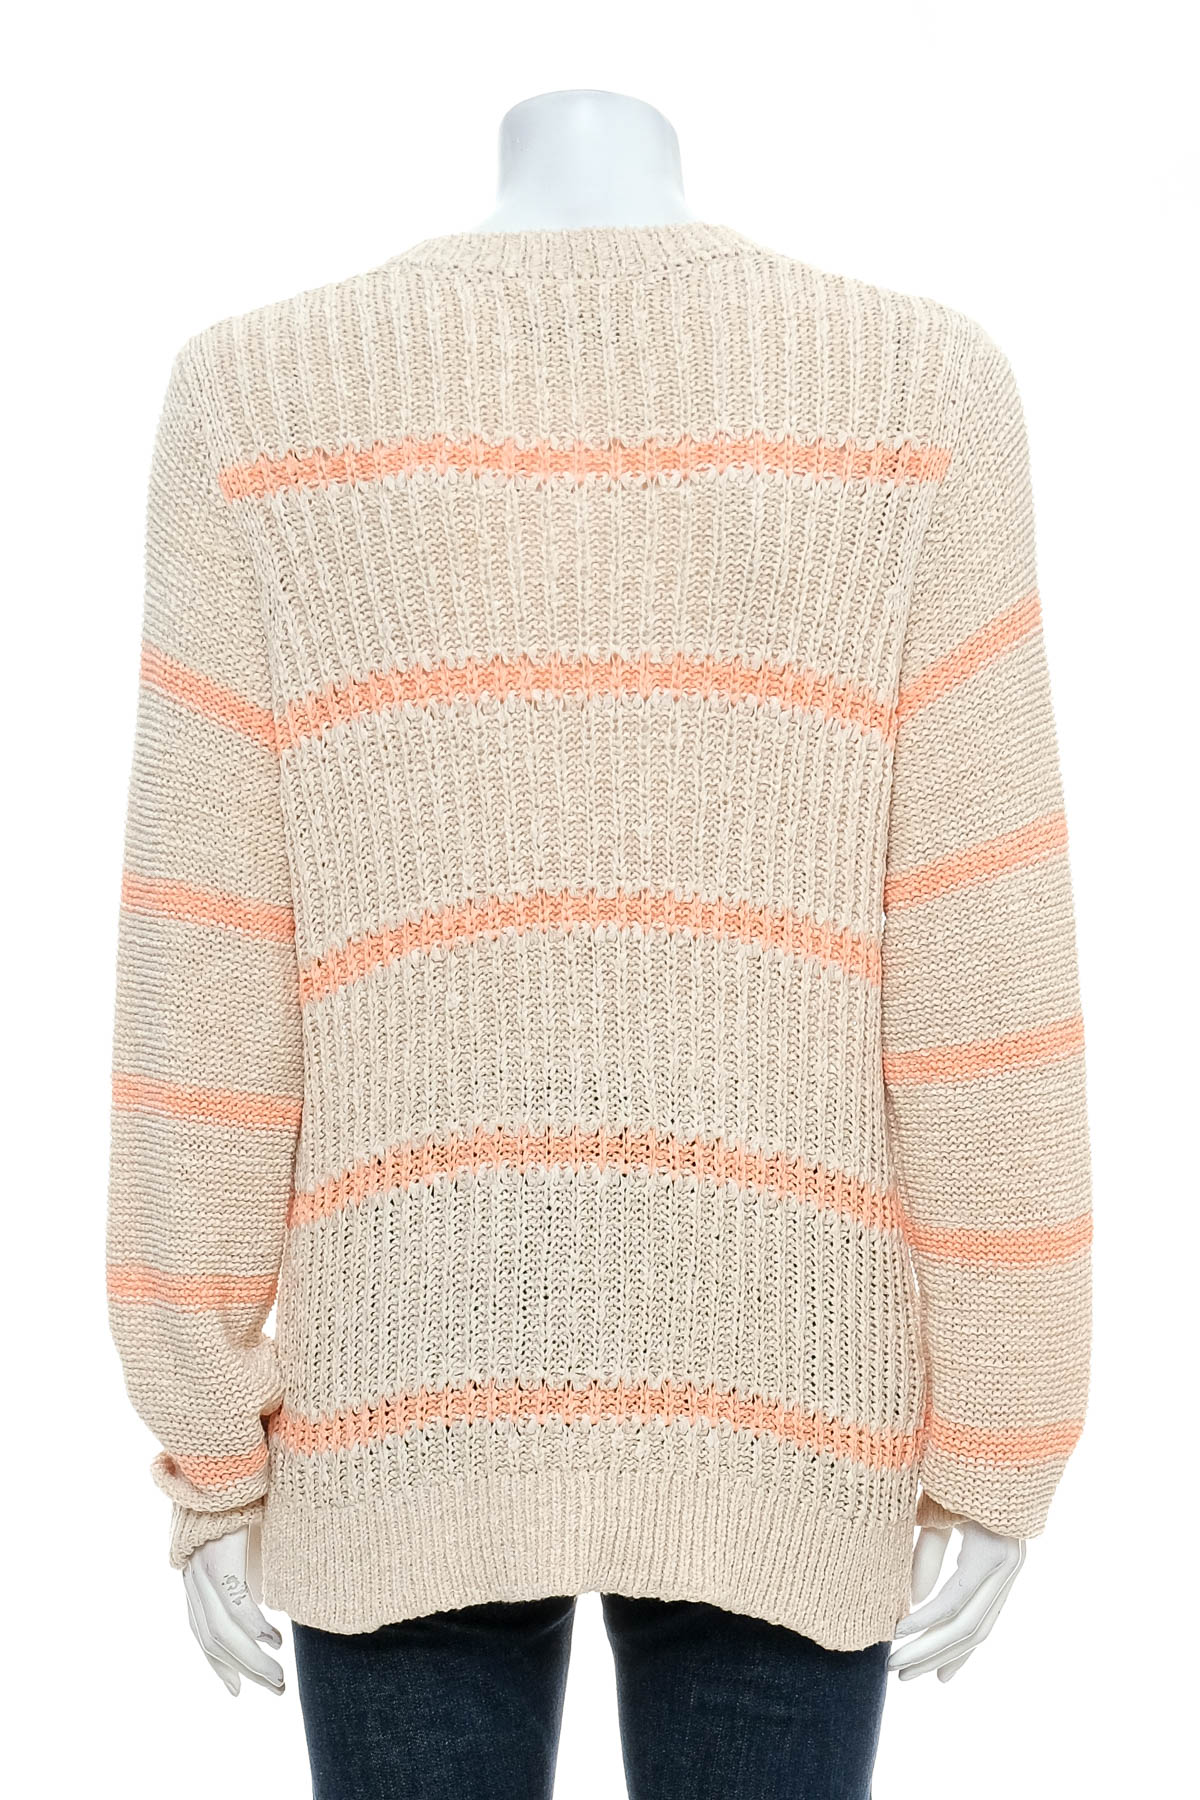 Women's sweater - ANN TAYLOR LOFT - 1